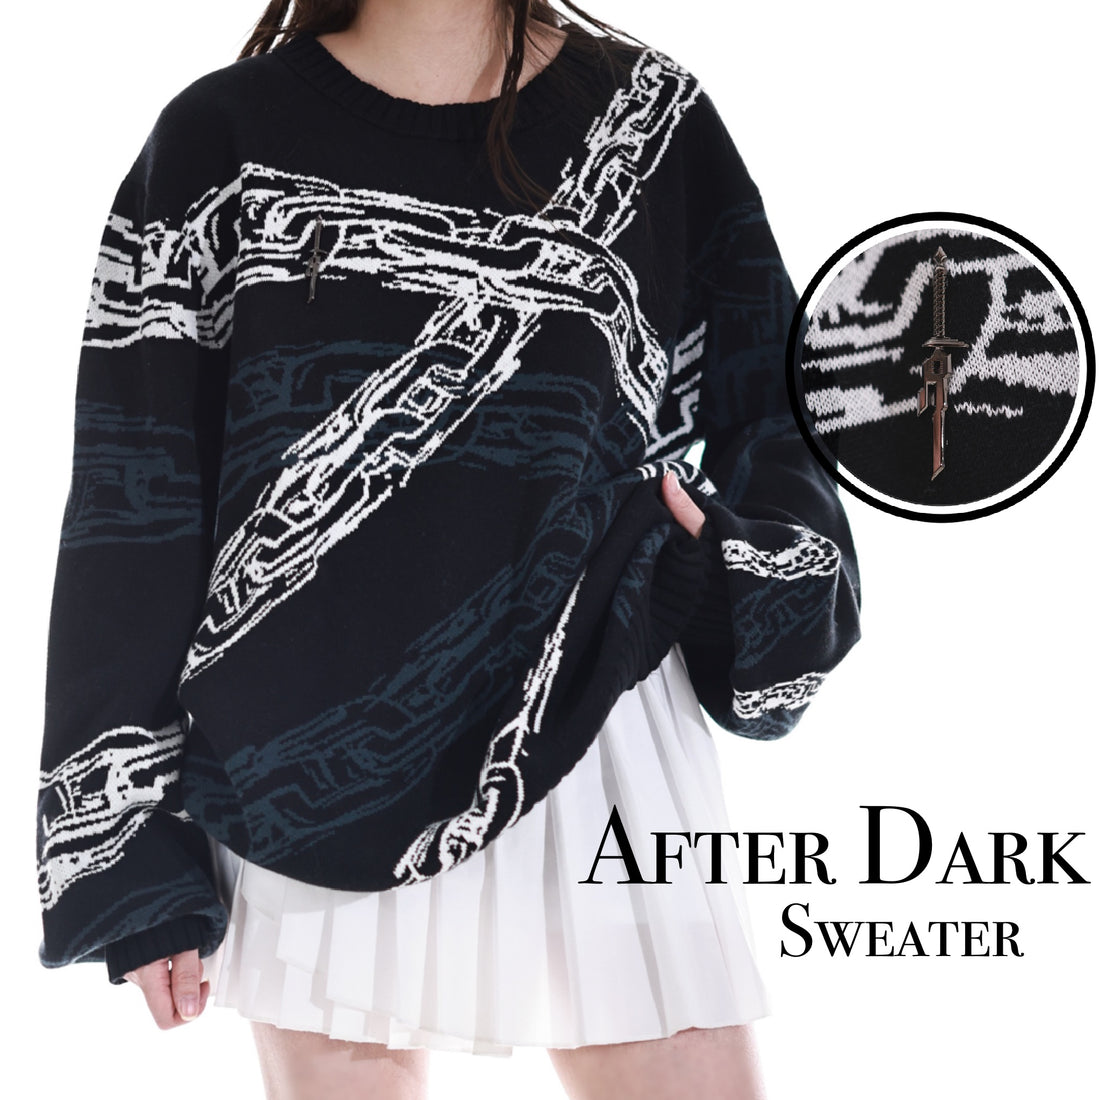 After Dark Sweater Preorder